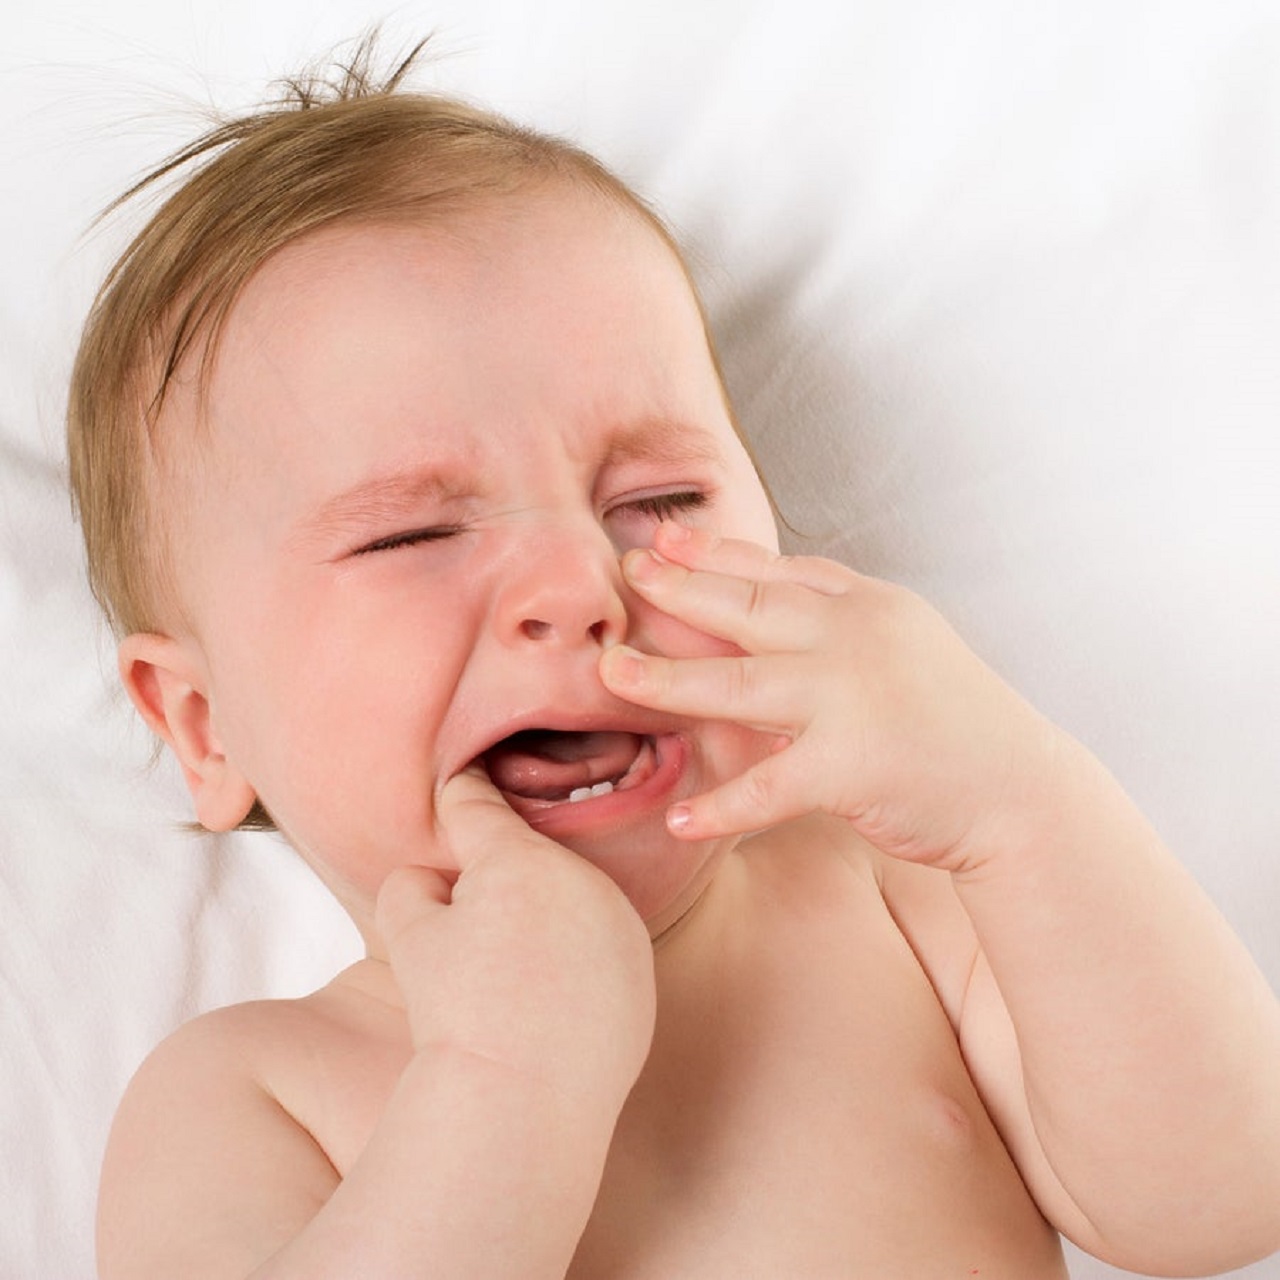 Quá trình mọc răng có thể gây đau đớn cho bé không?
